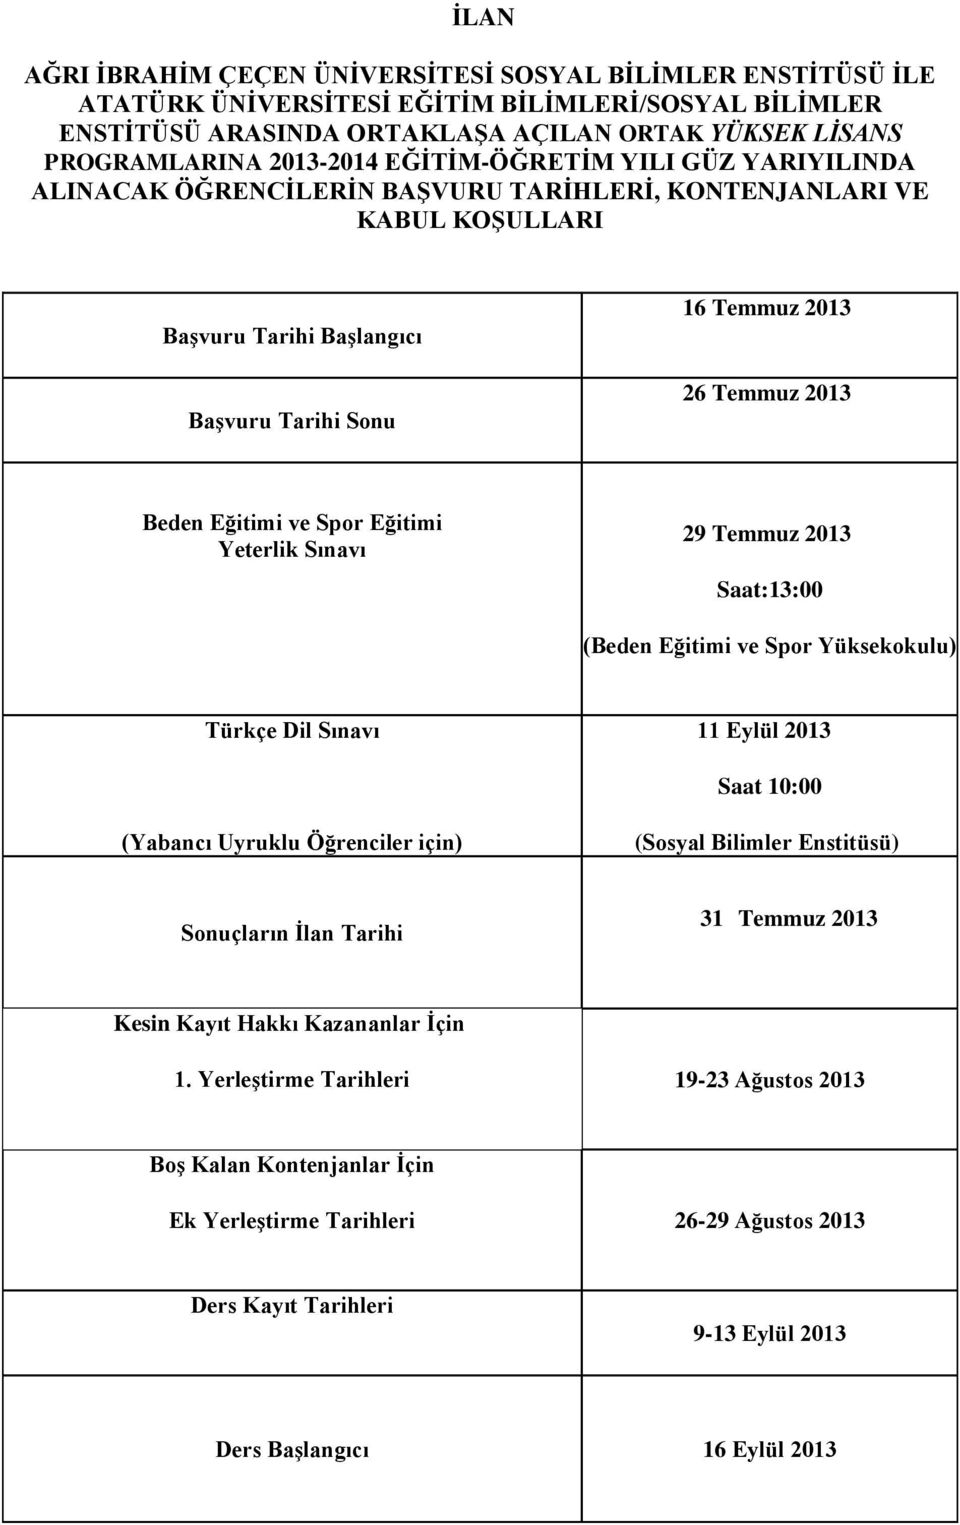 Beden Eğitimi ve Spor Eğitimi Yeterlik Sınavı 29 Temmuz 2013 Saat:13:00 (Beden Eğitimi ve Spor okulu) Türkçe Dil Sınavı 11 Eylül 2013 Saat 10:00 (Yabancı Uyruklu Öğrenciler için) (Sosyal Bilimler